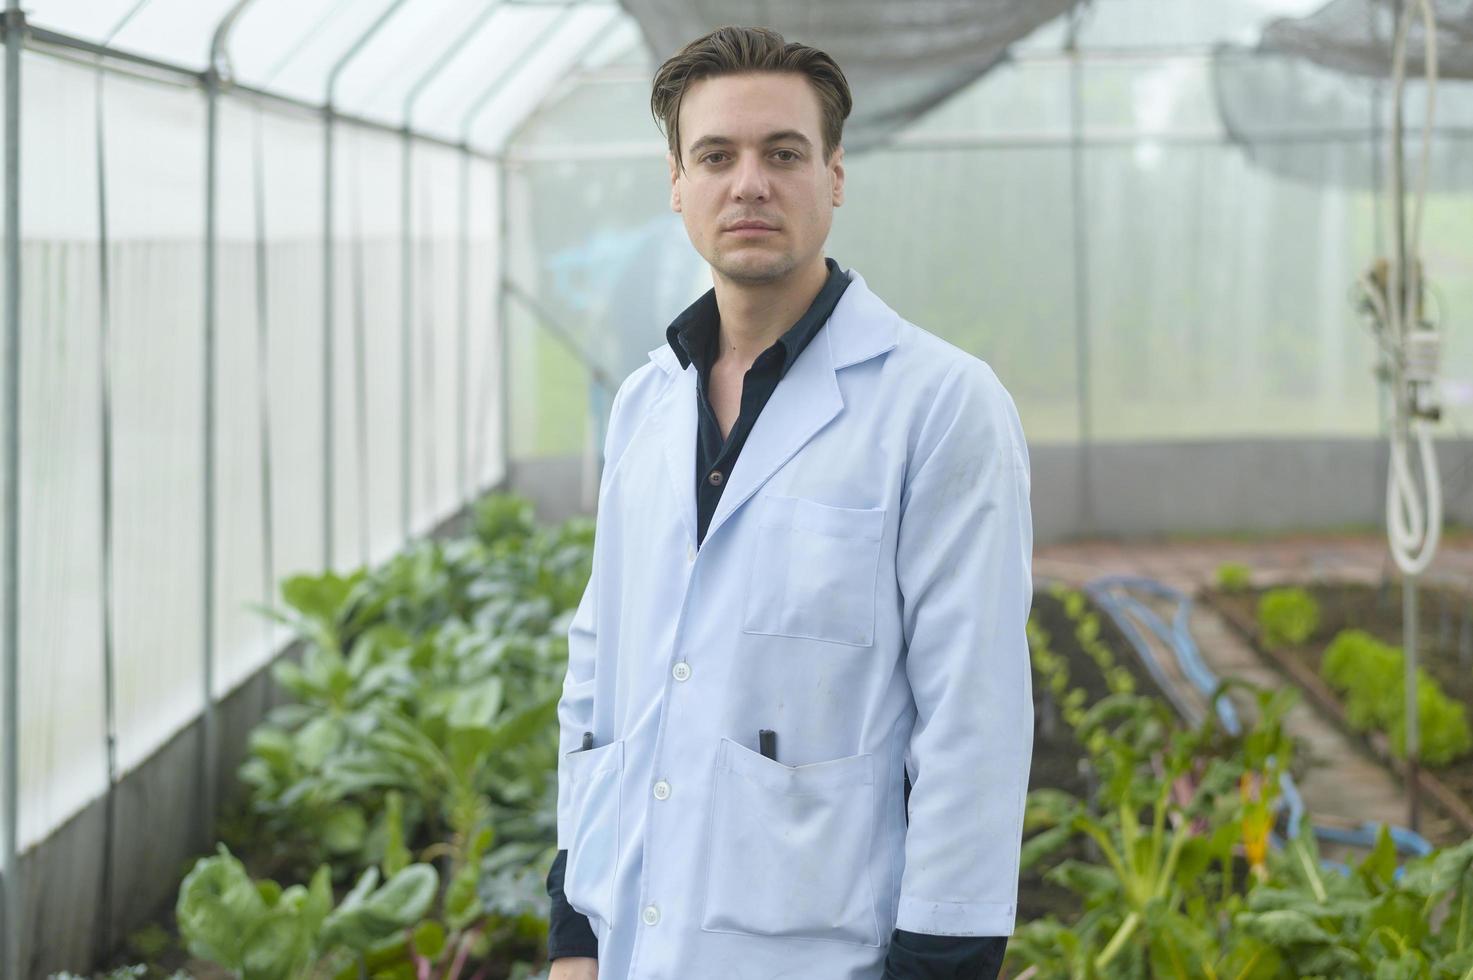 un homme scientifique analyse des plantes de légumes biologiques en serre, concept de technologie agricole photo